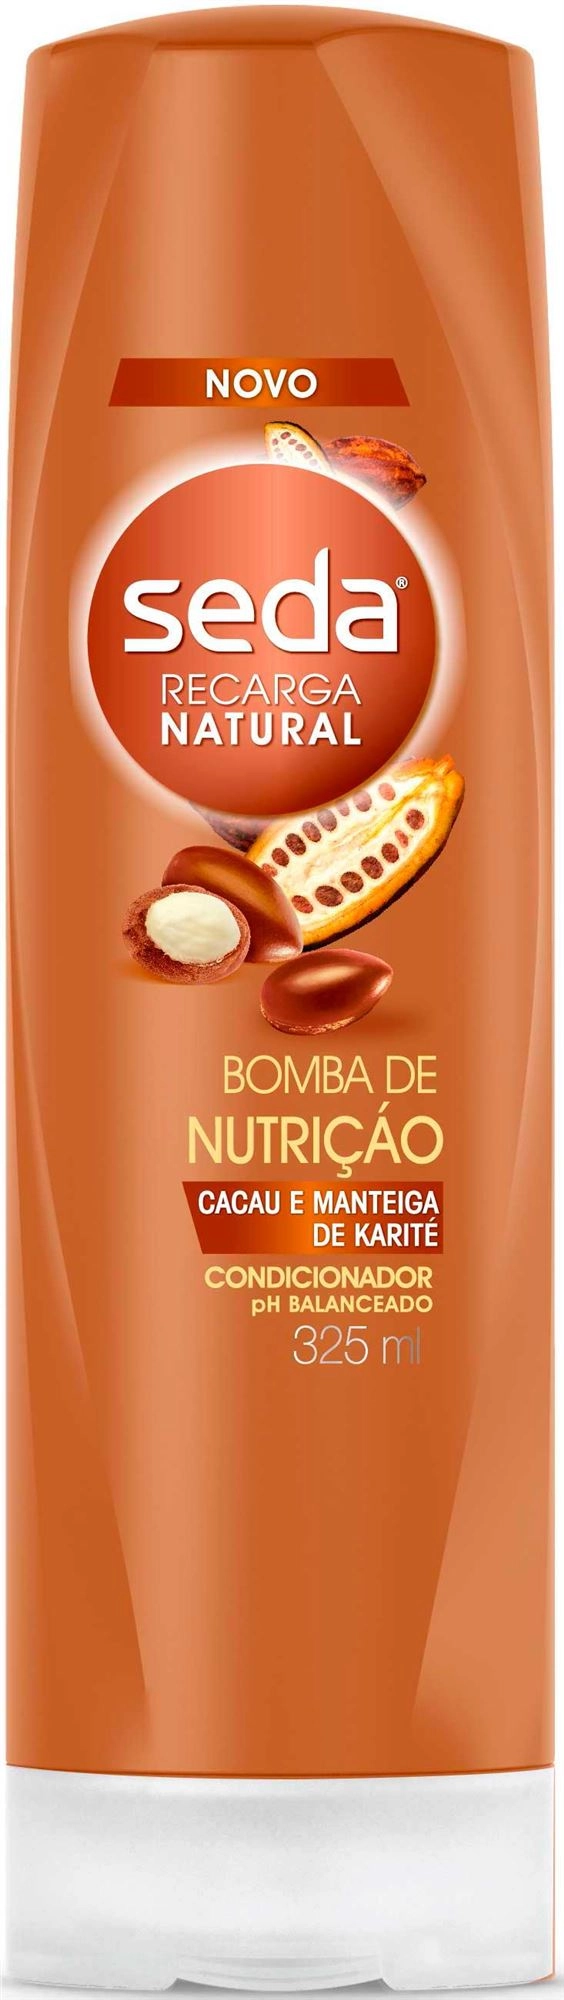 Shampoo Seda Bomba De Nutrição 325ml